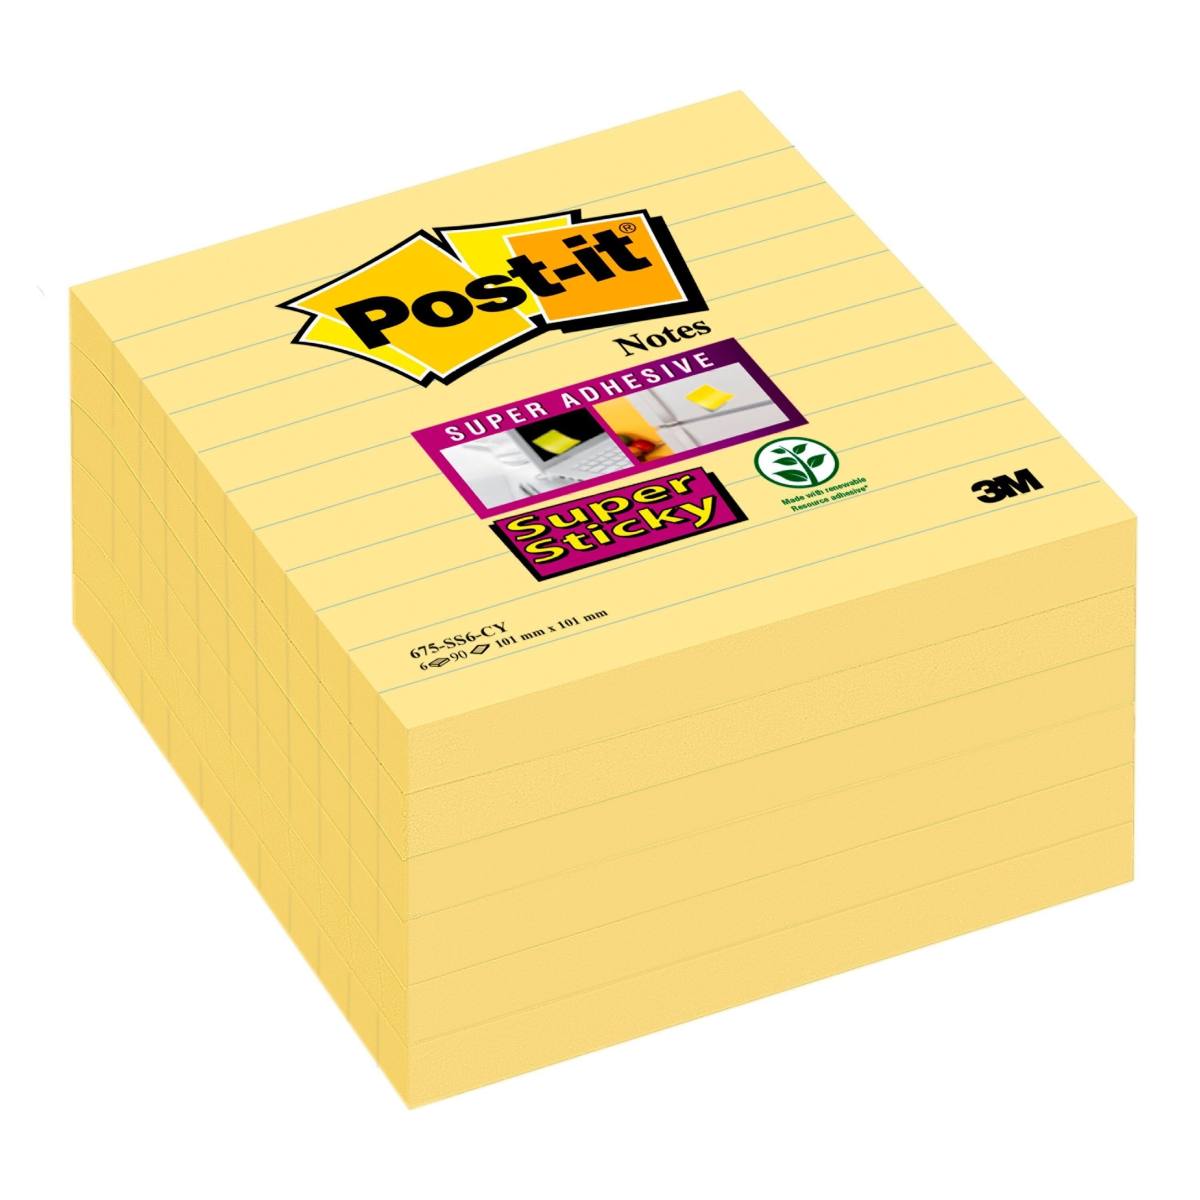 3M Post-it Super Sticky Notes 675-6SCY, 101 mm x 101 mm, keltainen, 6 kpl 90 arkin lehtiöitä kukin